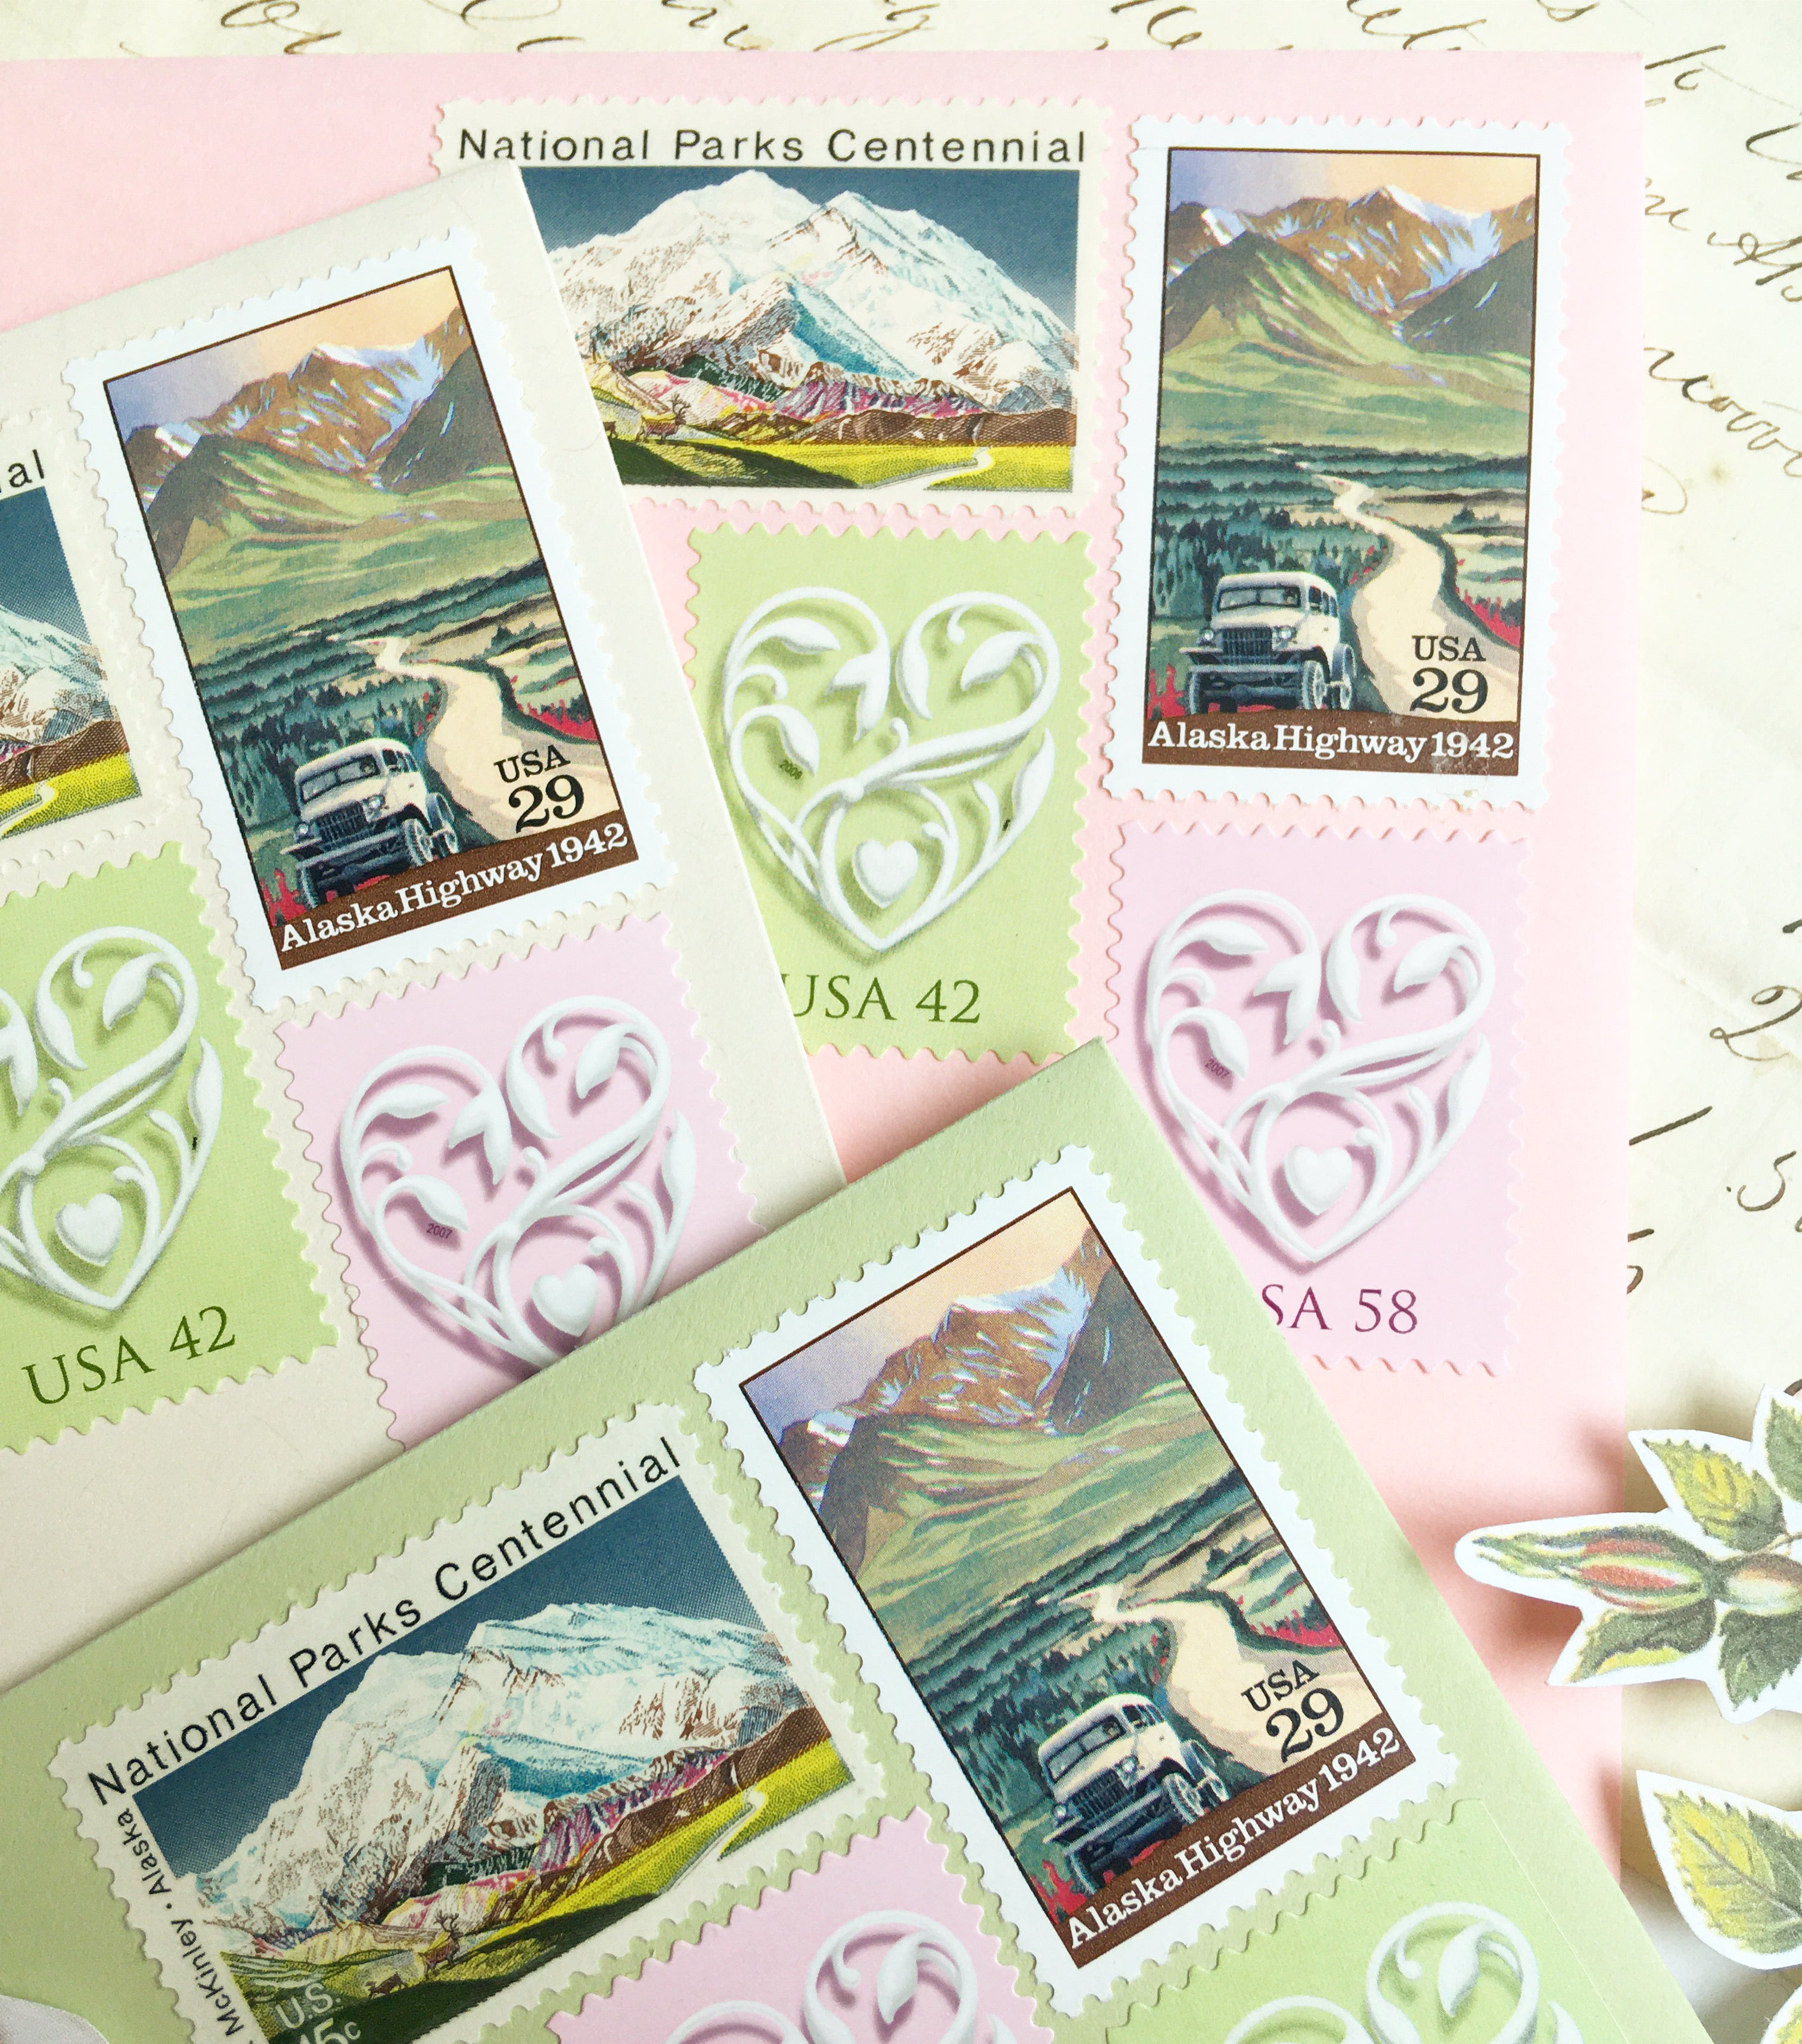 TEN 13c Alaska State Flag Stamp Vintage Unused US Postage Stamps